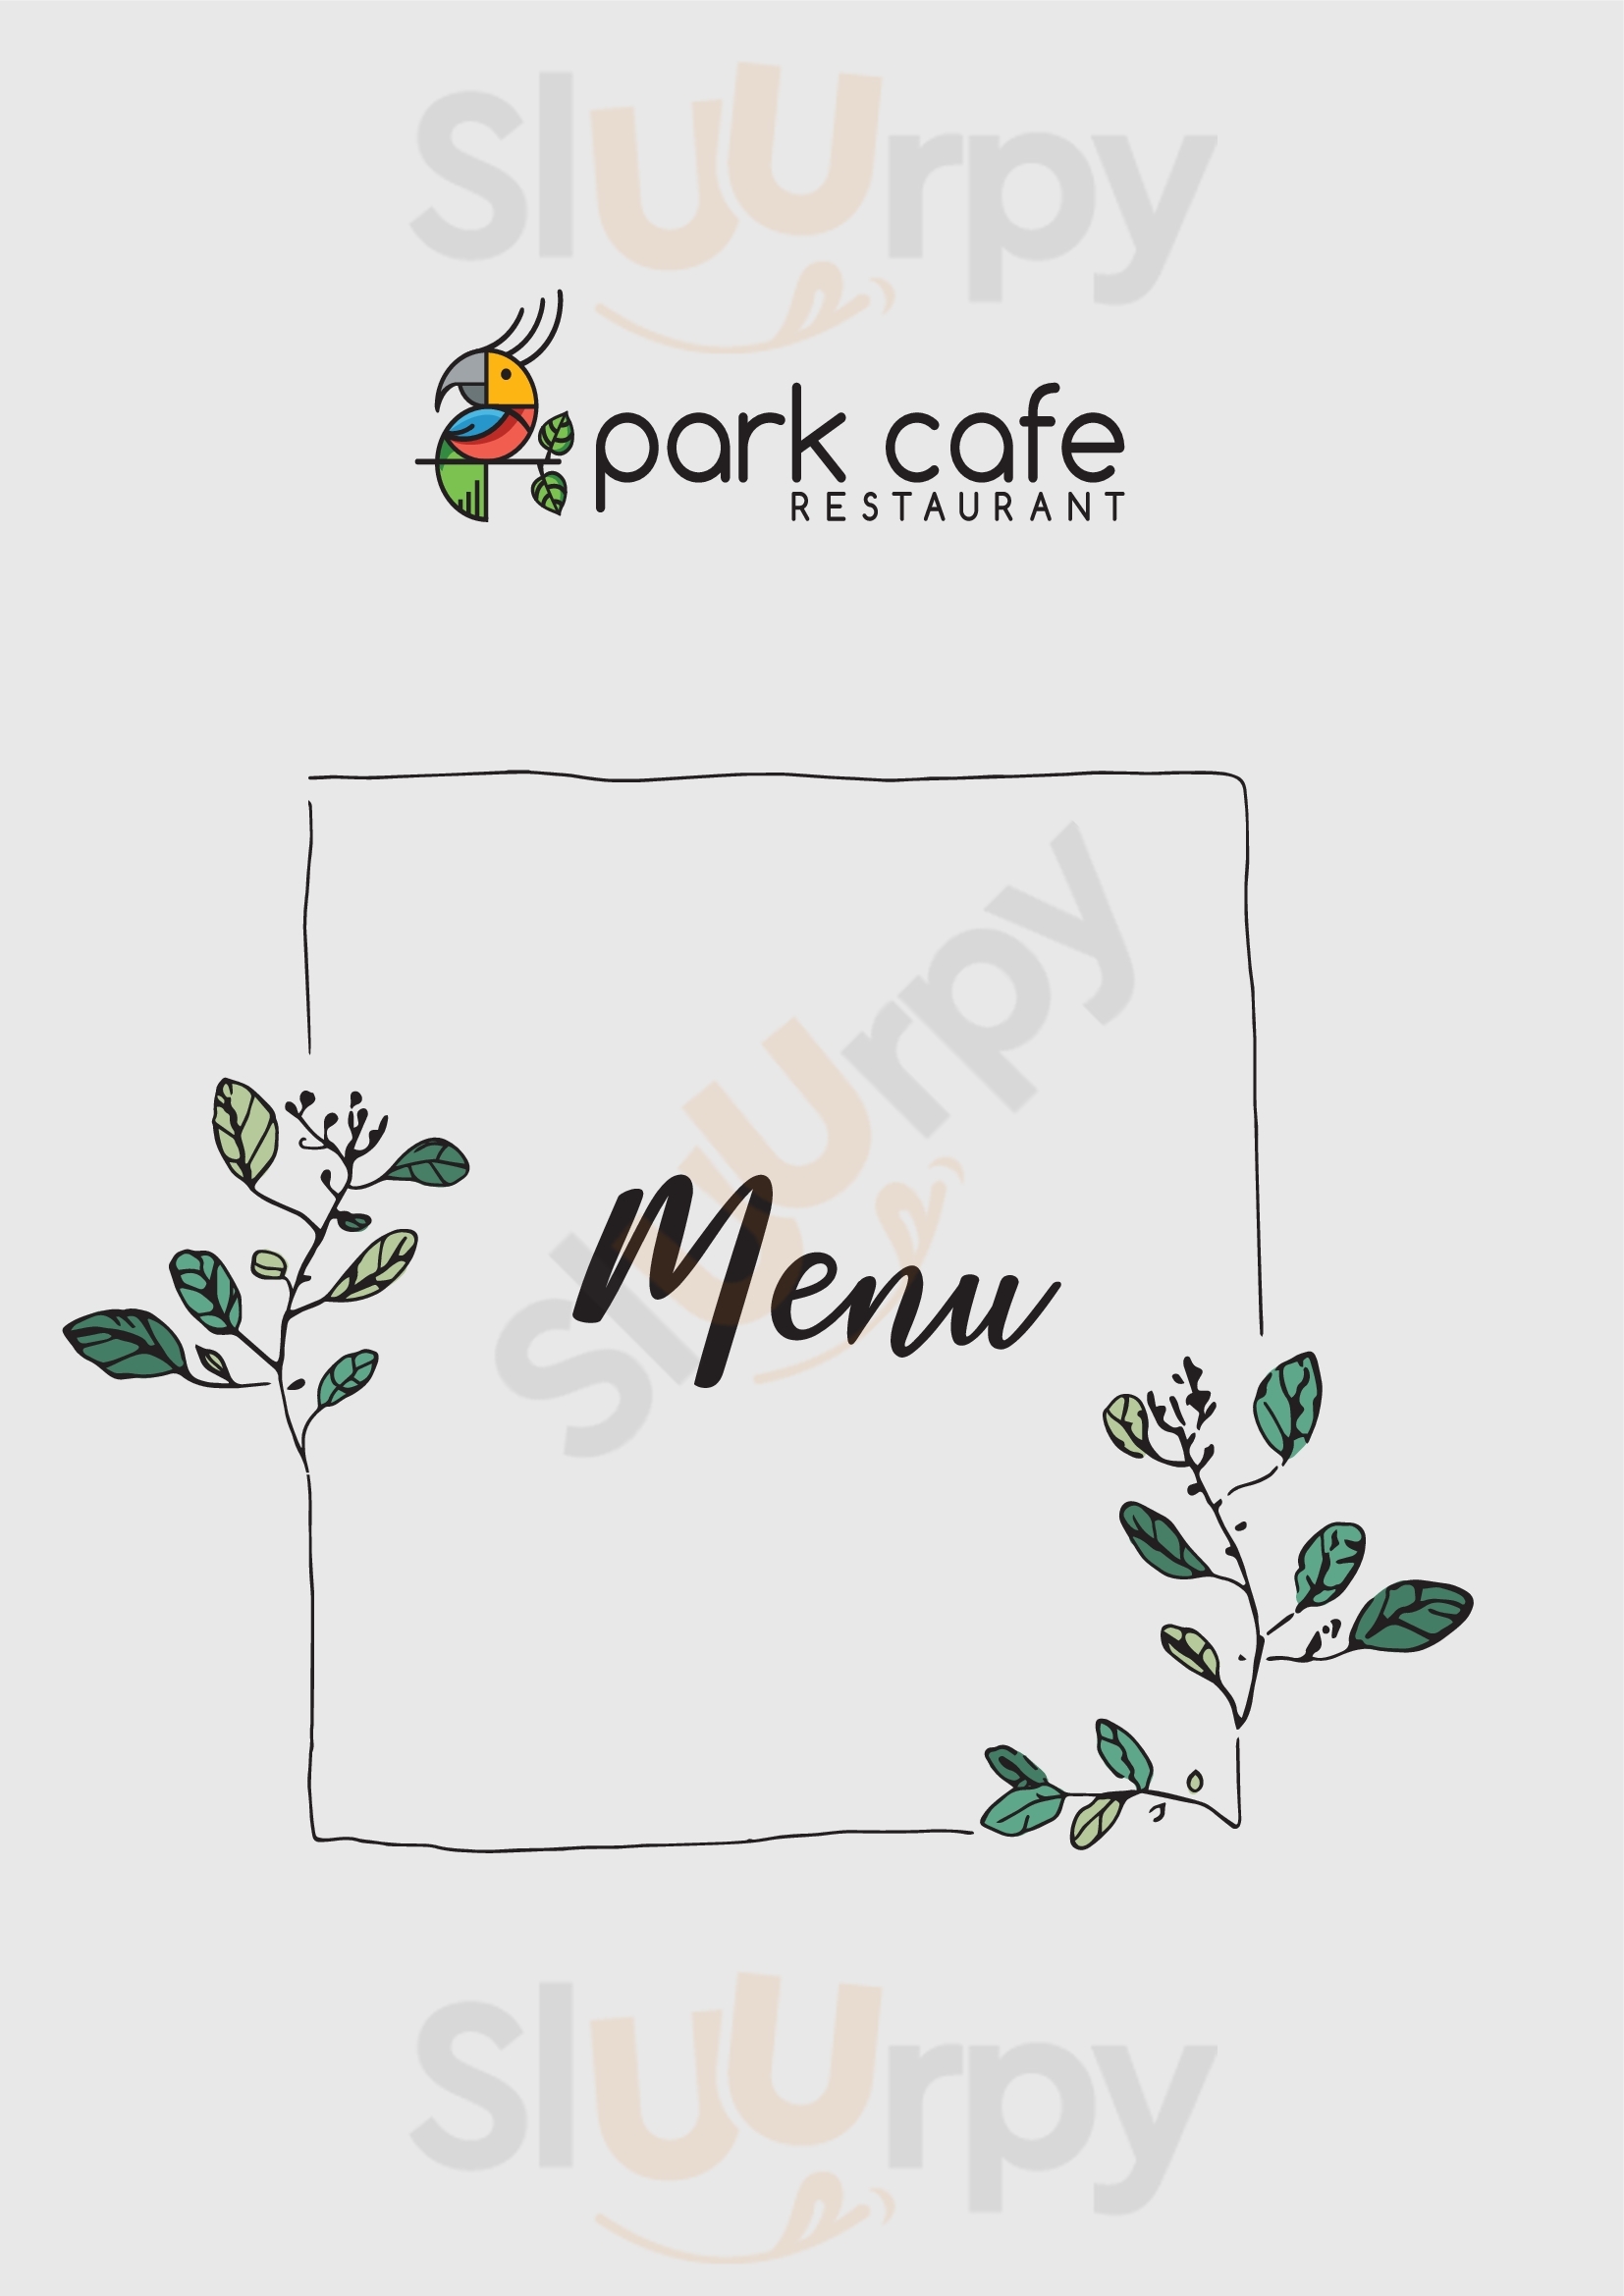 Üsküdar Park Cafe & Restaurant İstanbul Menu - 1